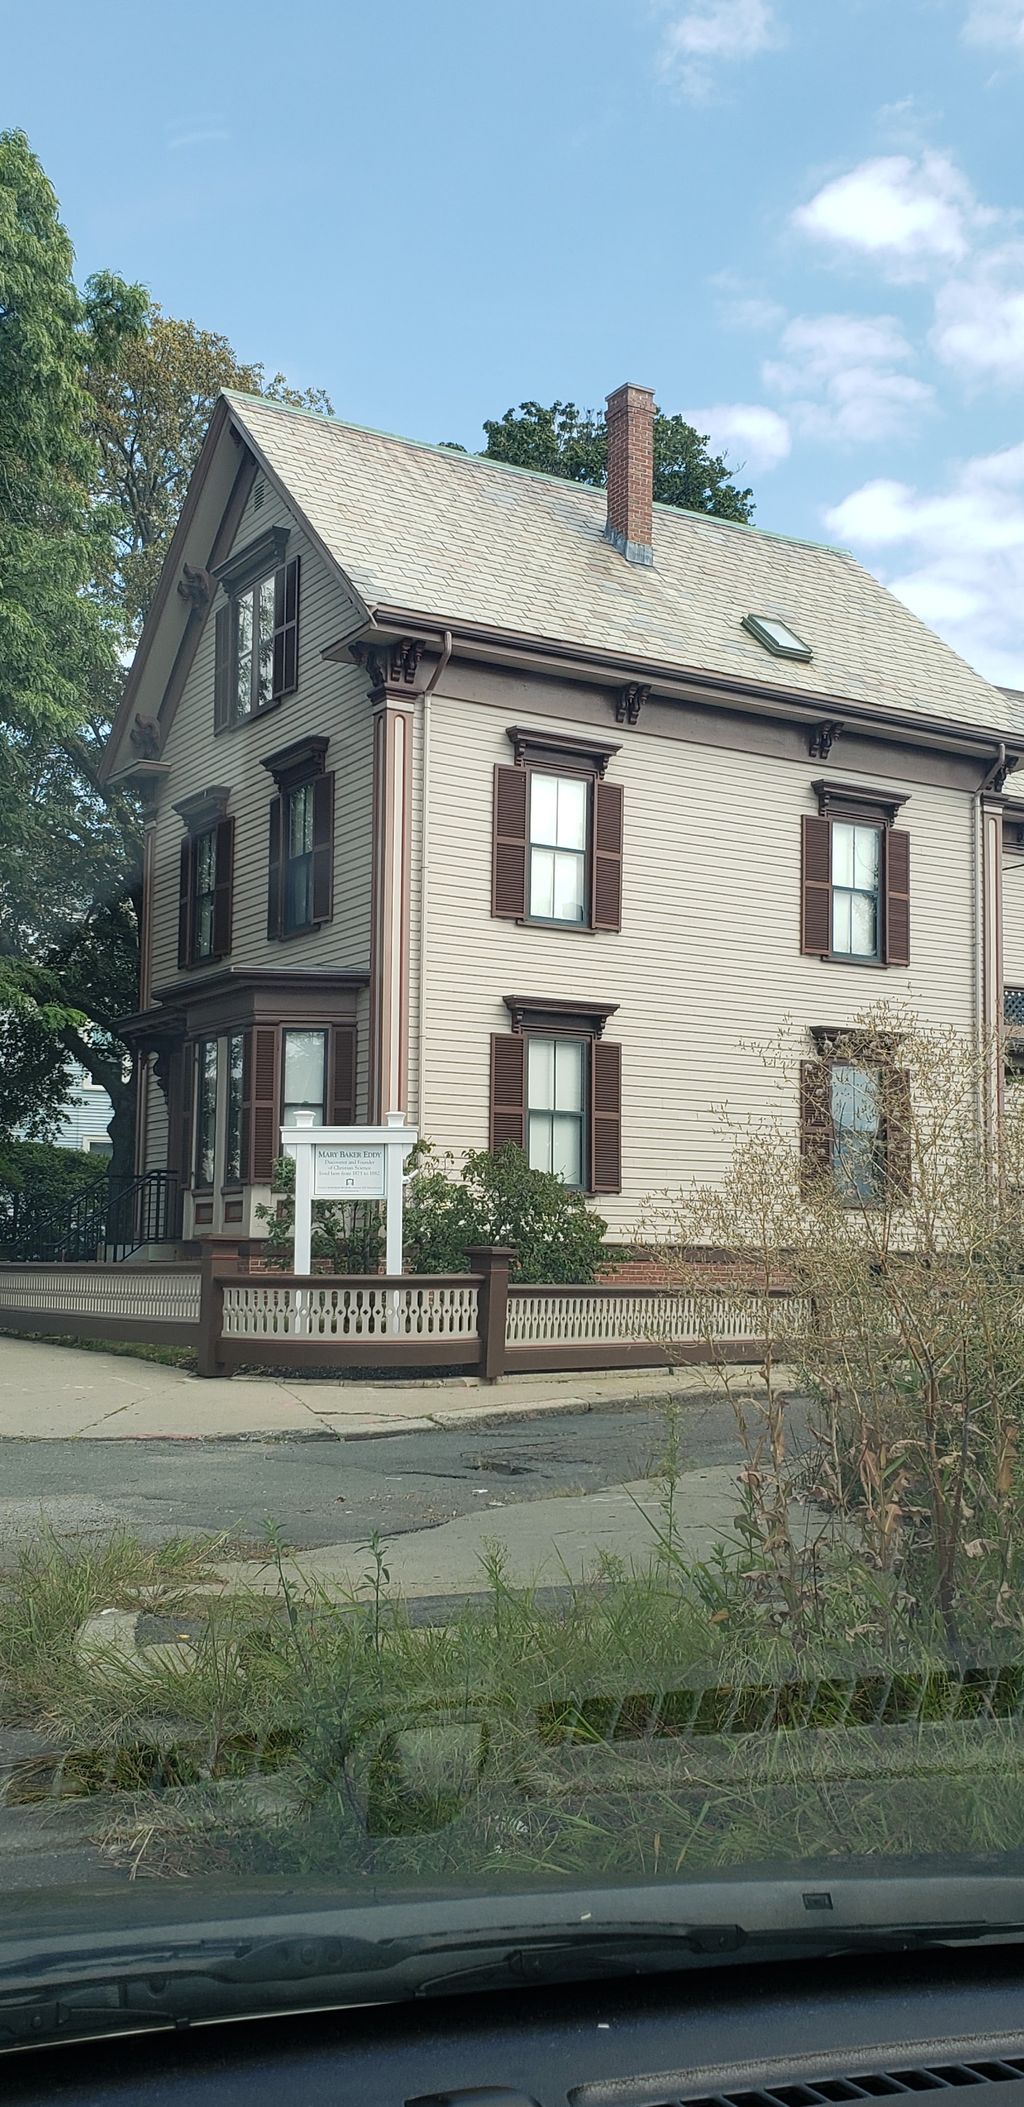 Mary Baker Eddy Historic House